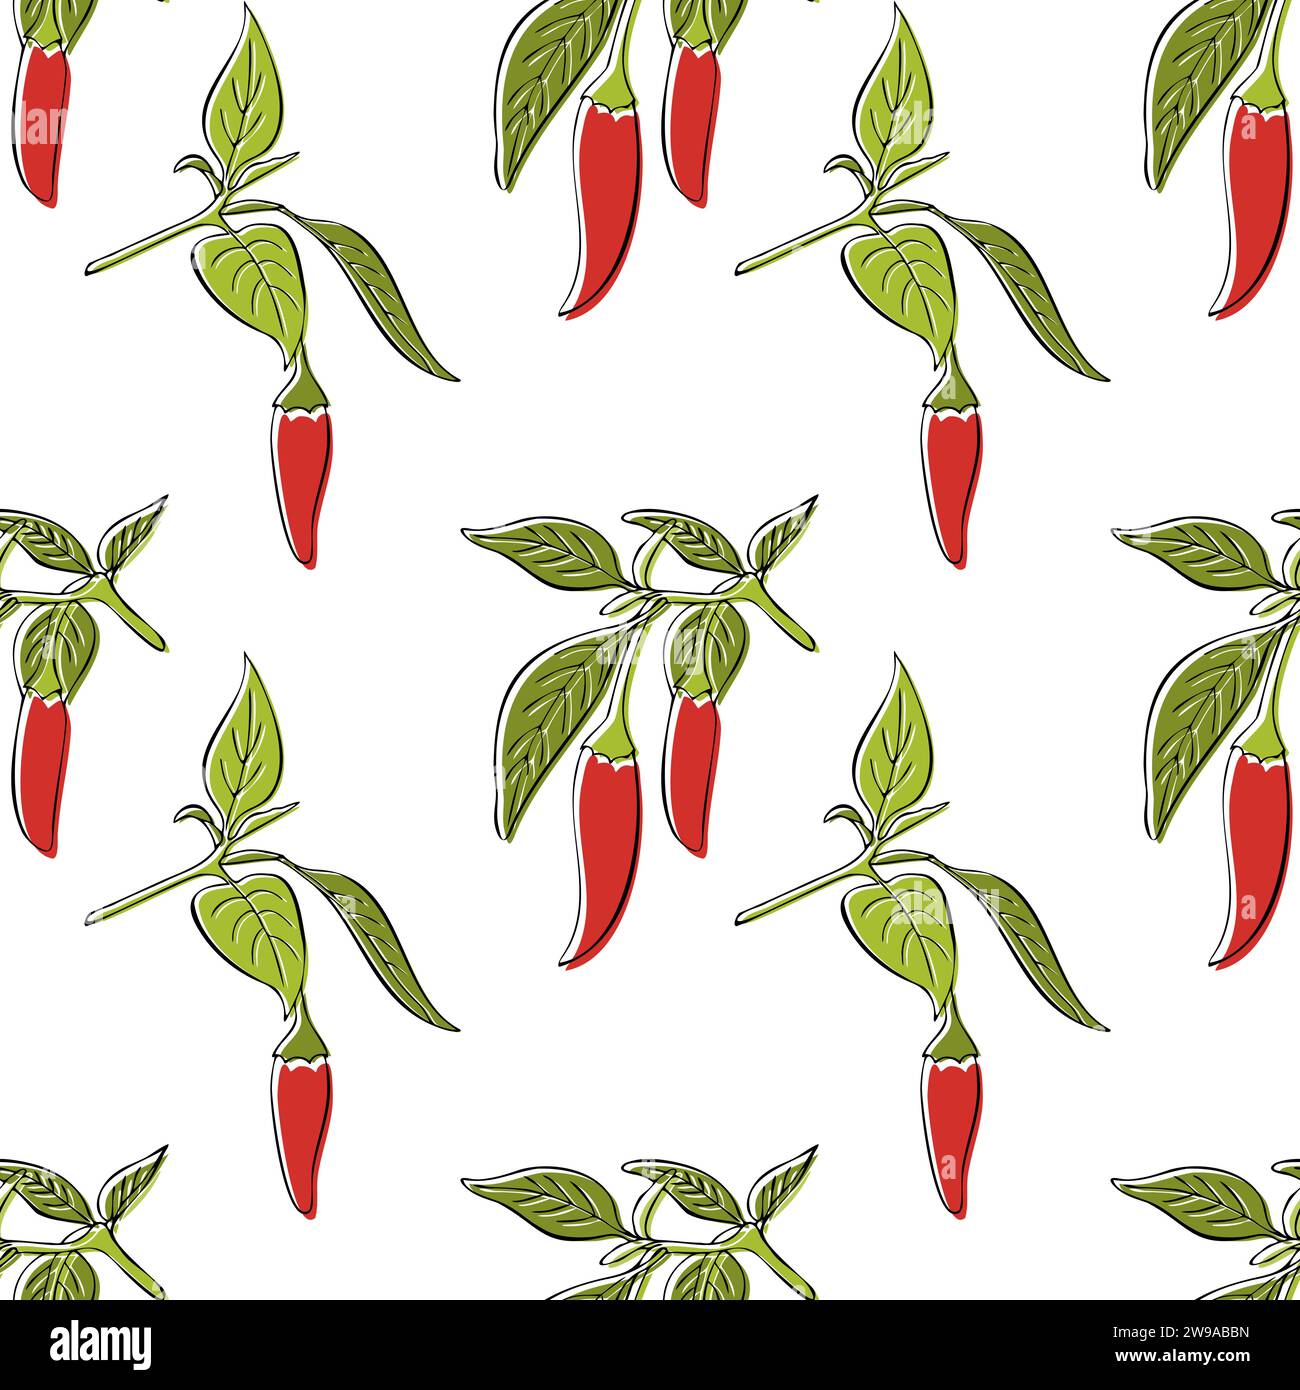 Motif dessiné à la main de branche de piments piments piments rouges sur fond blanc. Couleurs rouge et vert. Illustration vectorielle Illustration de Vecteur